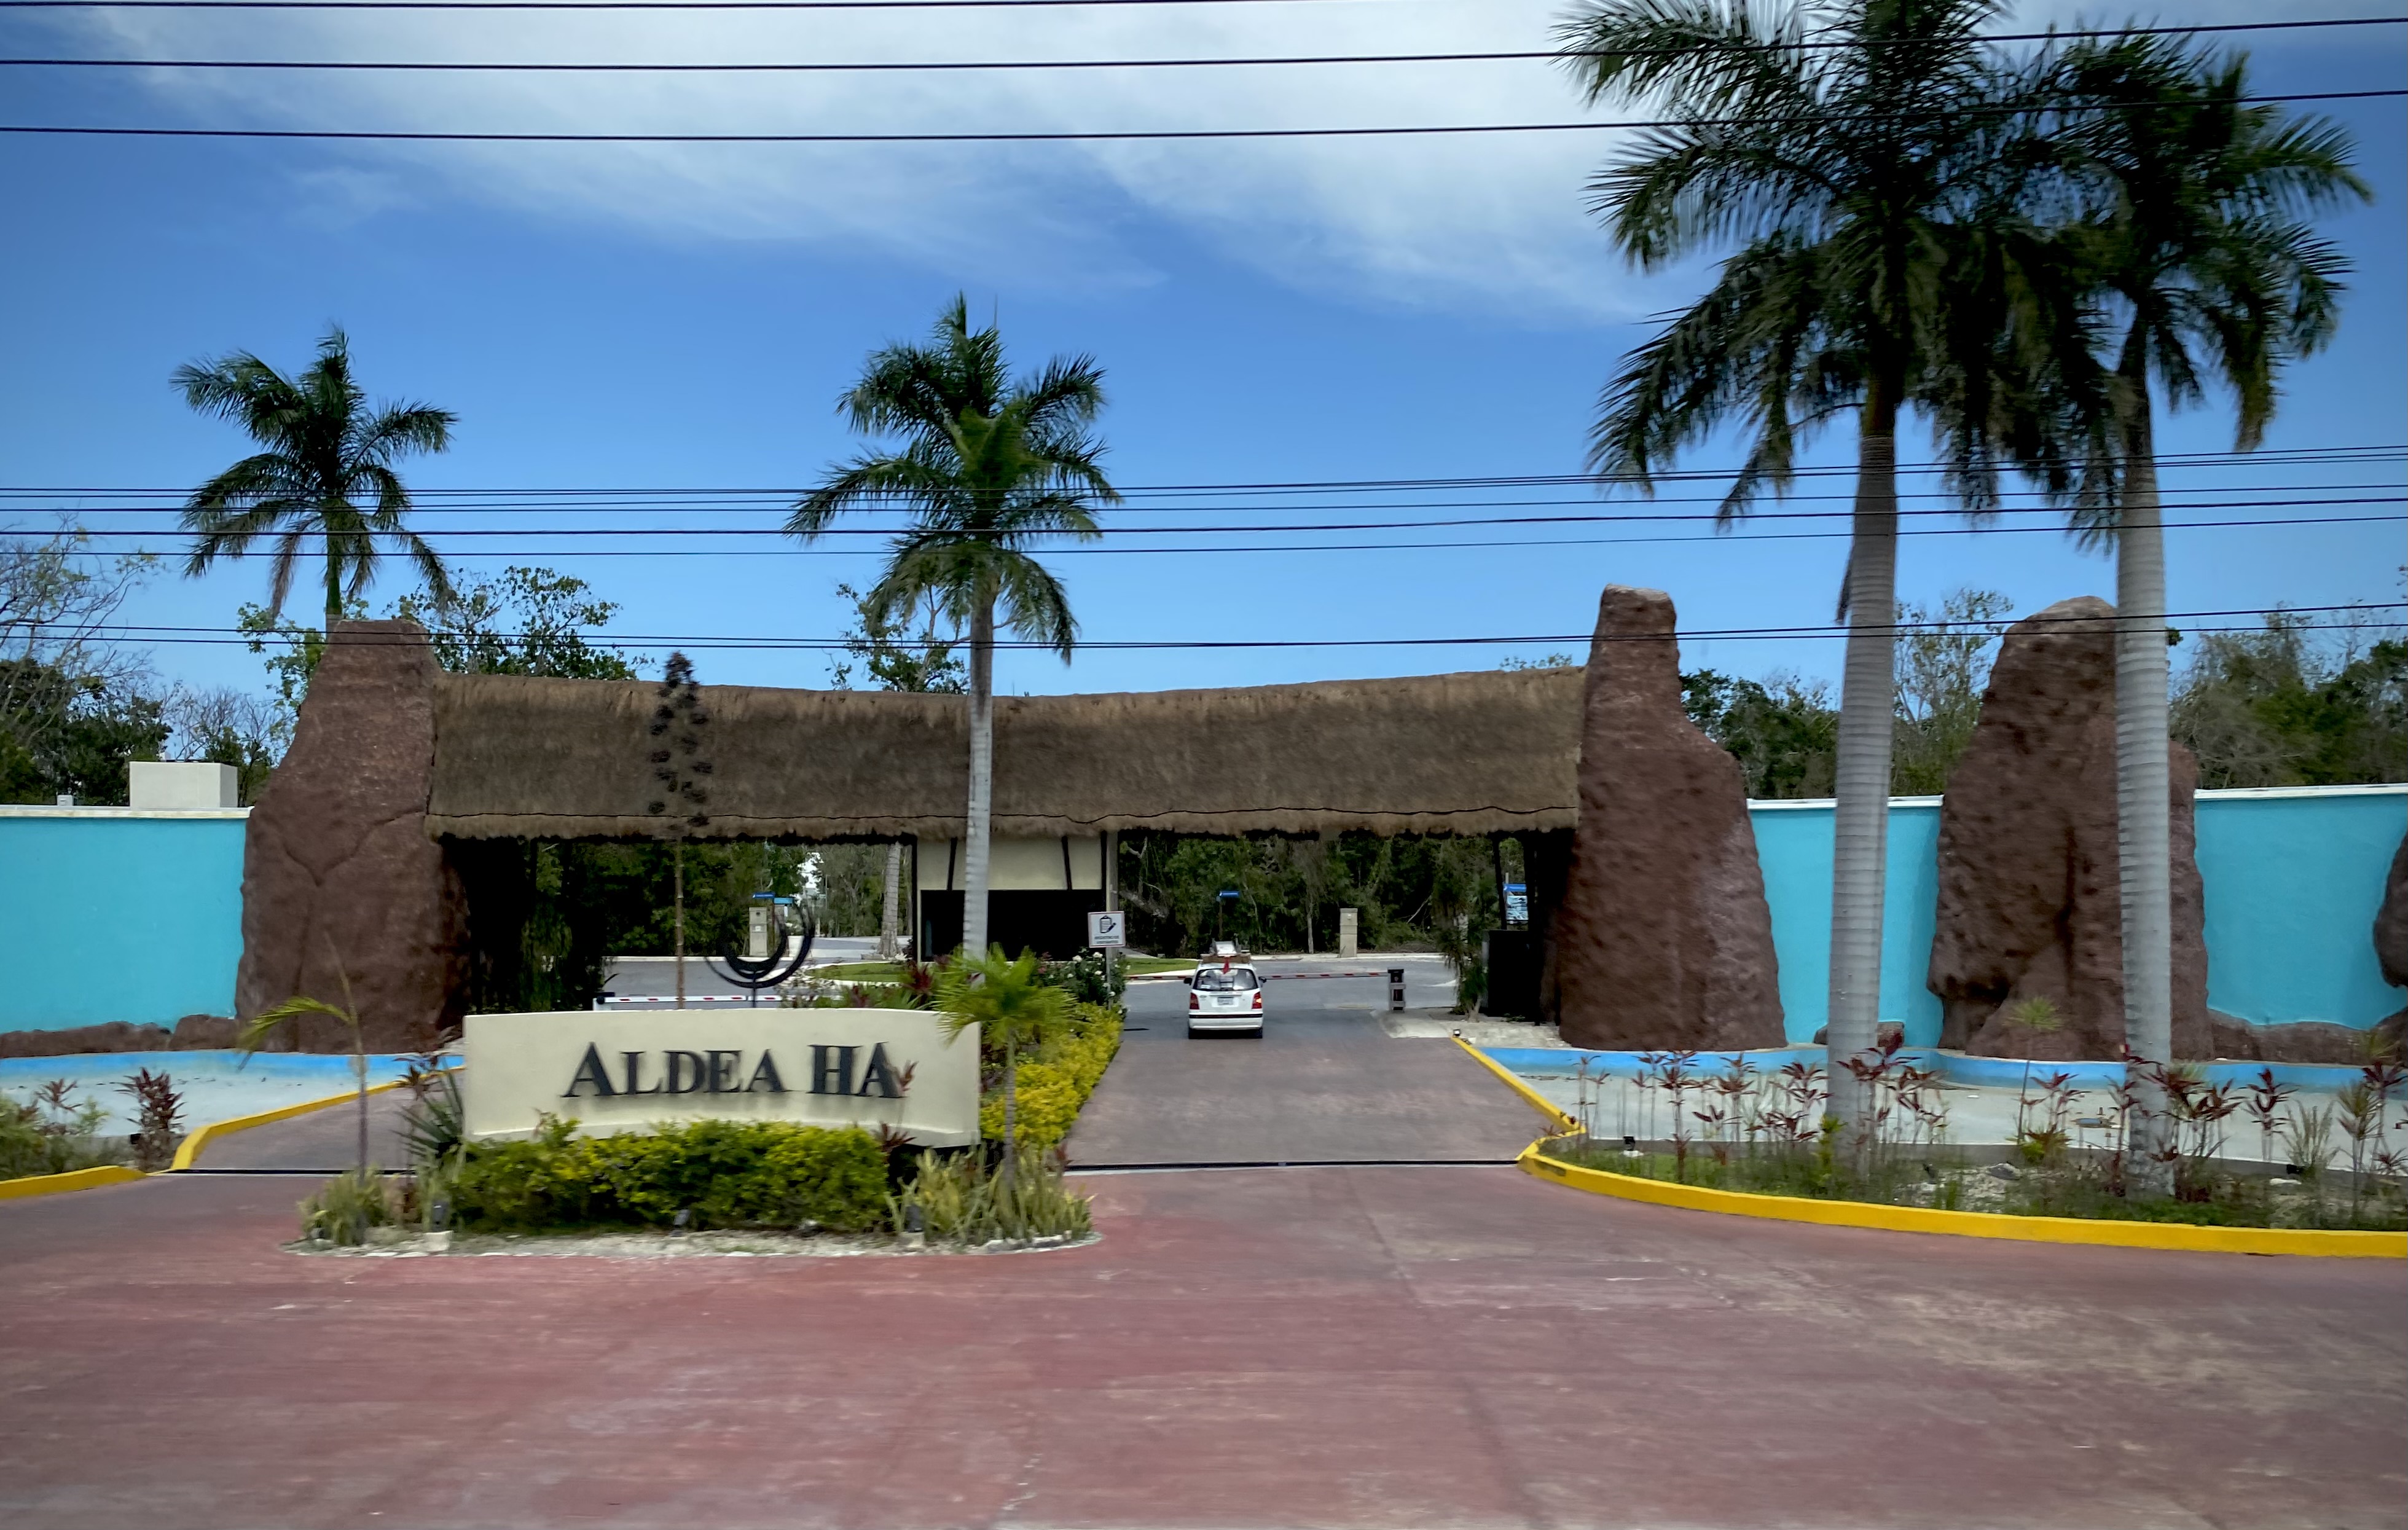 https://upload.wikimedia.org/wikipedia/commons/f/f0/Riviera_Maya%2C_Quintana_Roo%2C_Mexico_-_Aldea_Ha.jpg